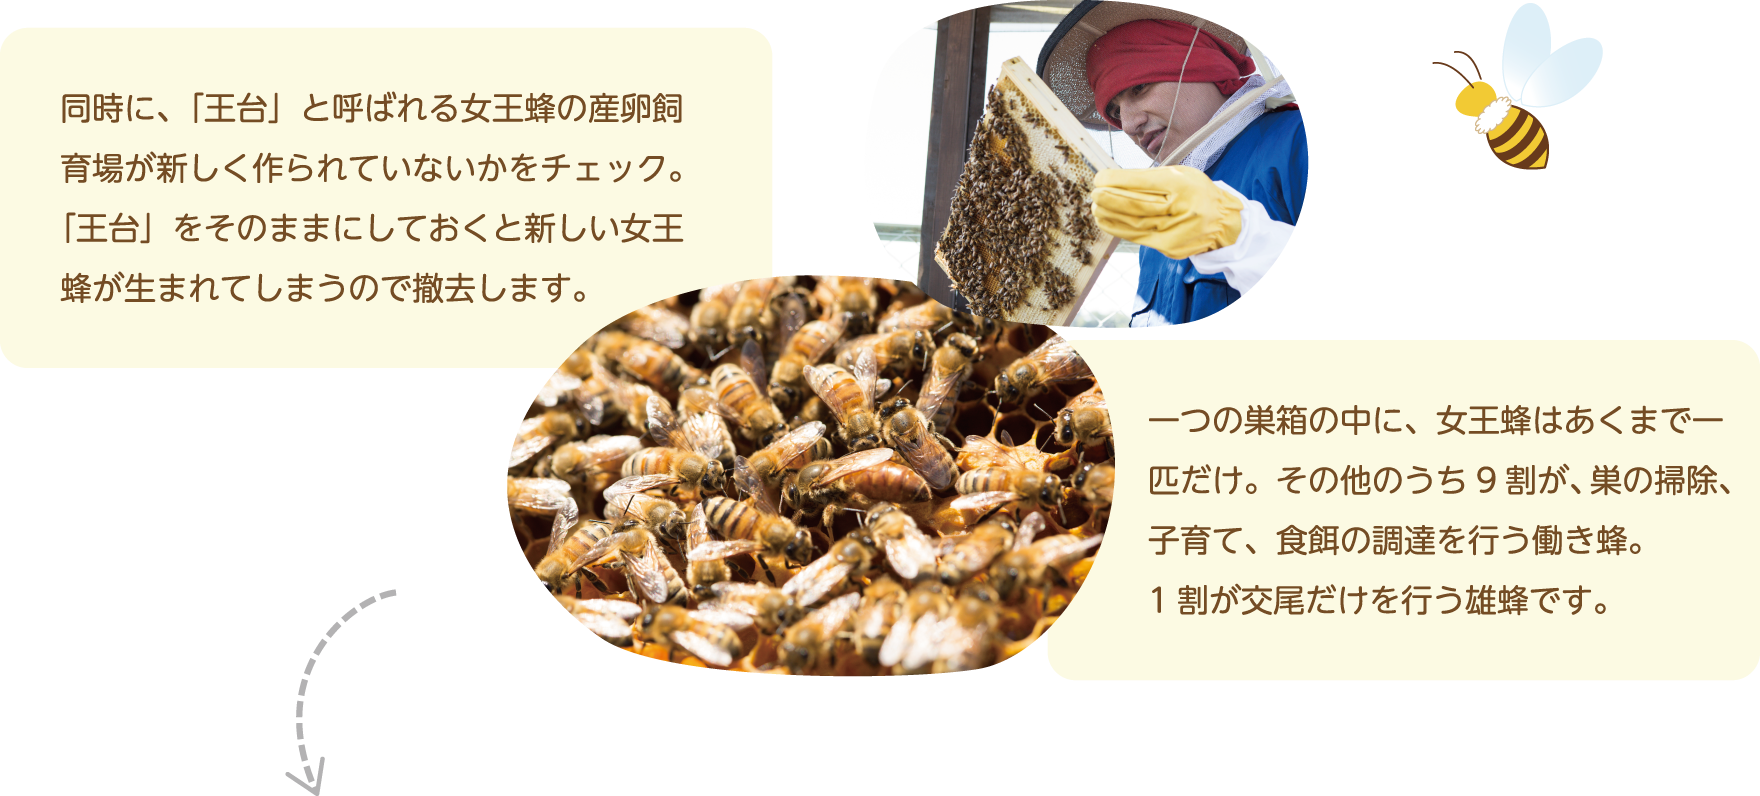 同時に、「王台」と呼ばれる女王蜂の産卵飼育場が新しく作られていないかをチェック。「王台」をそのままにしておくと新しい女王蜂が生まれてしまうので撤去します。一つの巣箱の中に、女王蜂はあくまで一匹だけ。その他のうち9割が、巣の掃除、子育て、食餌の調達を行う働き蜂。
1割が交尾だけを行う雄蜂です。